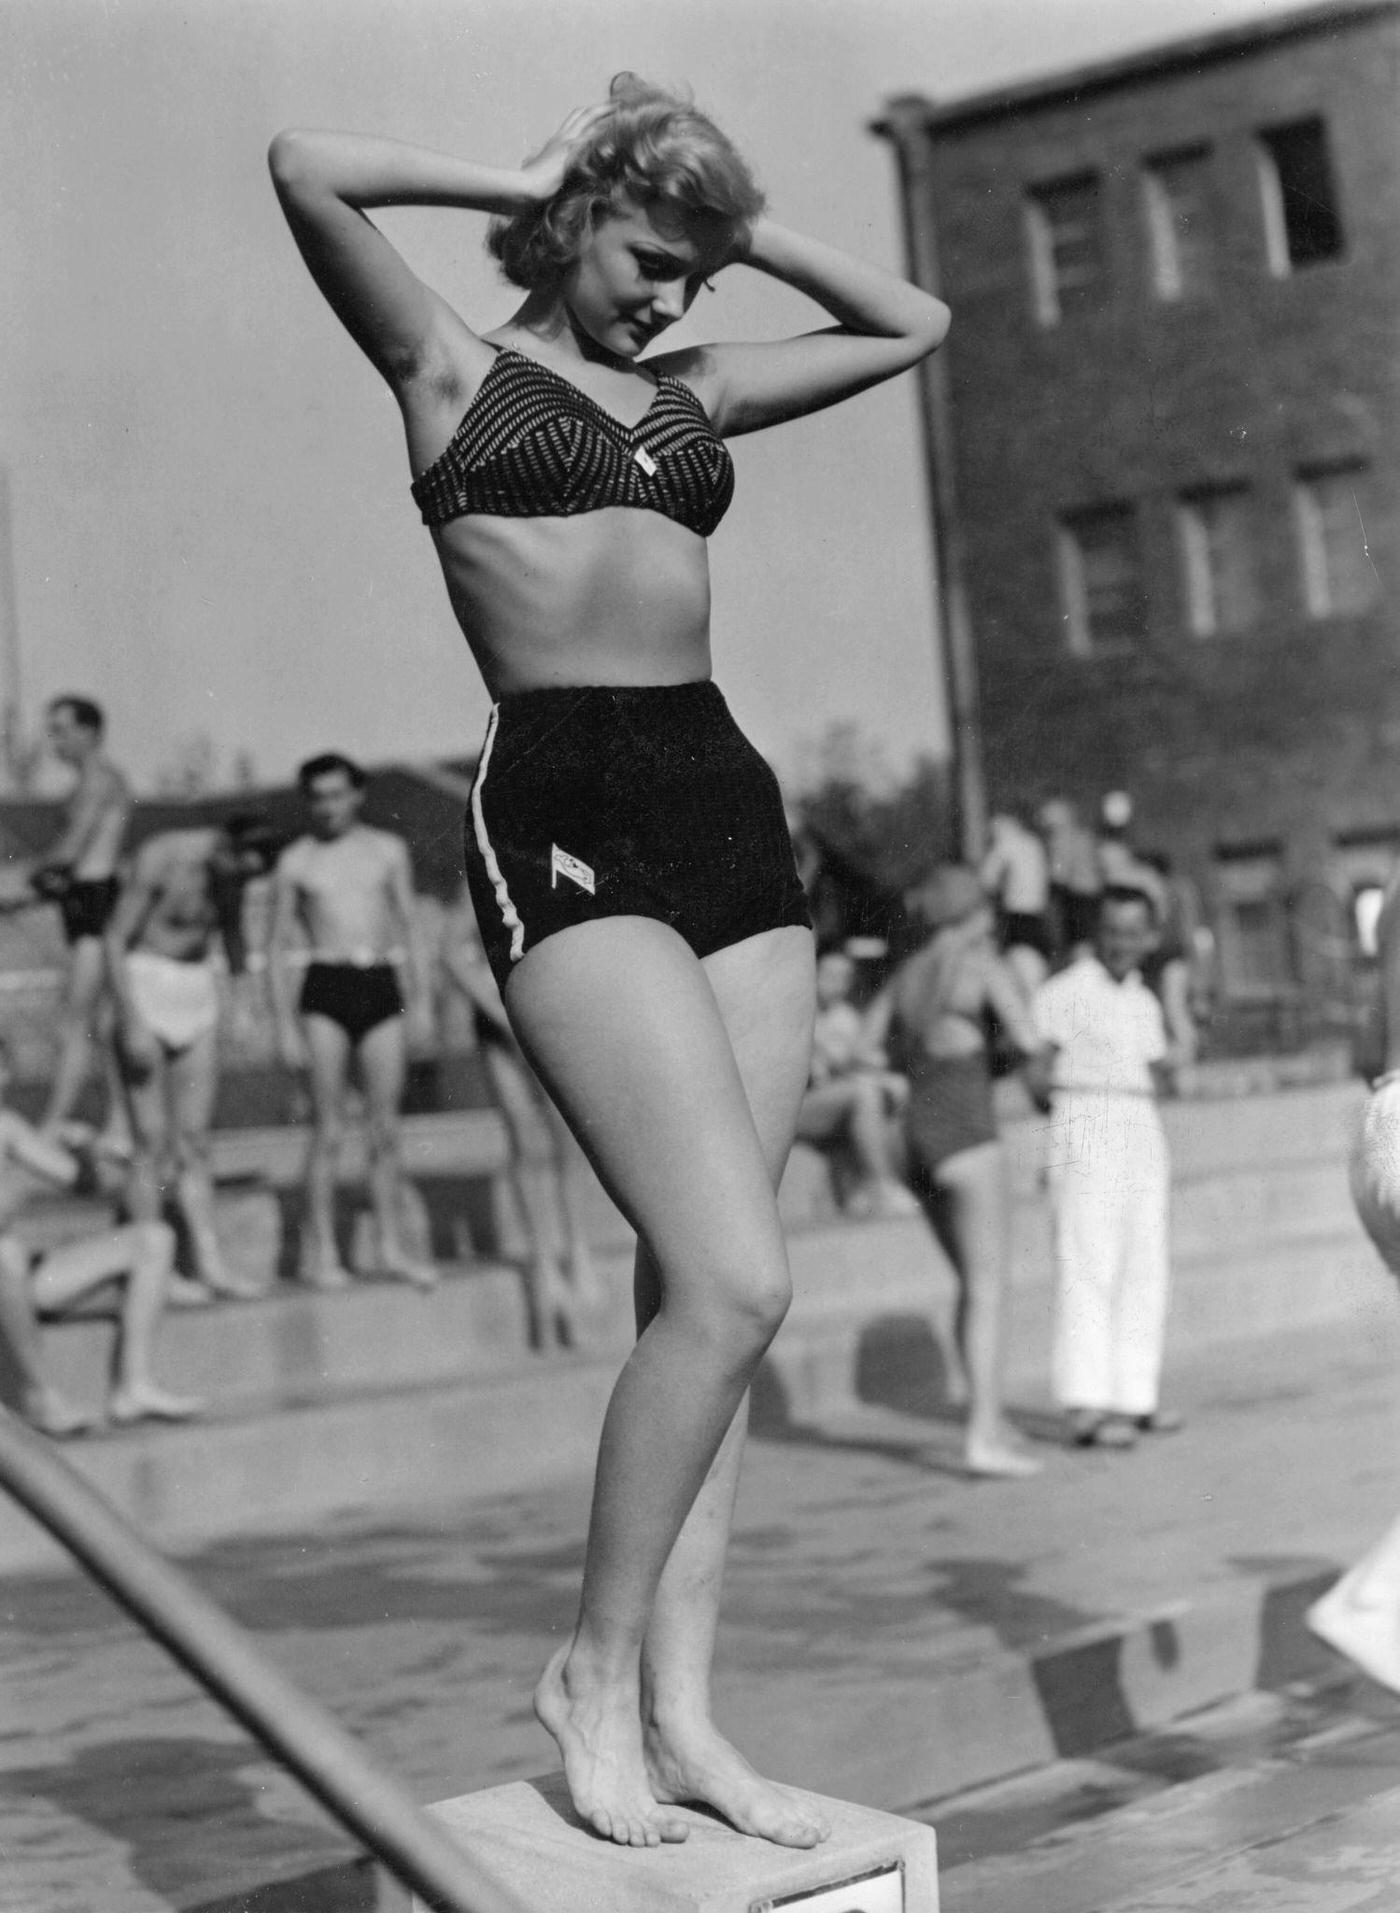 Bathing beauty in bikini fashion, Berlin, Germany, 1940.